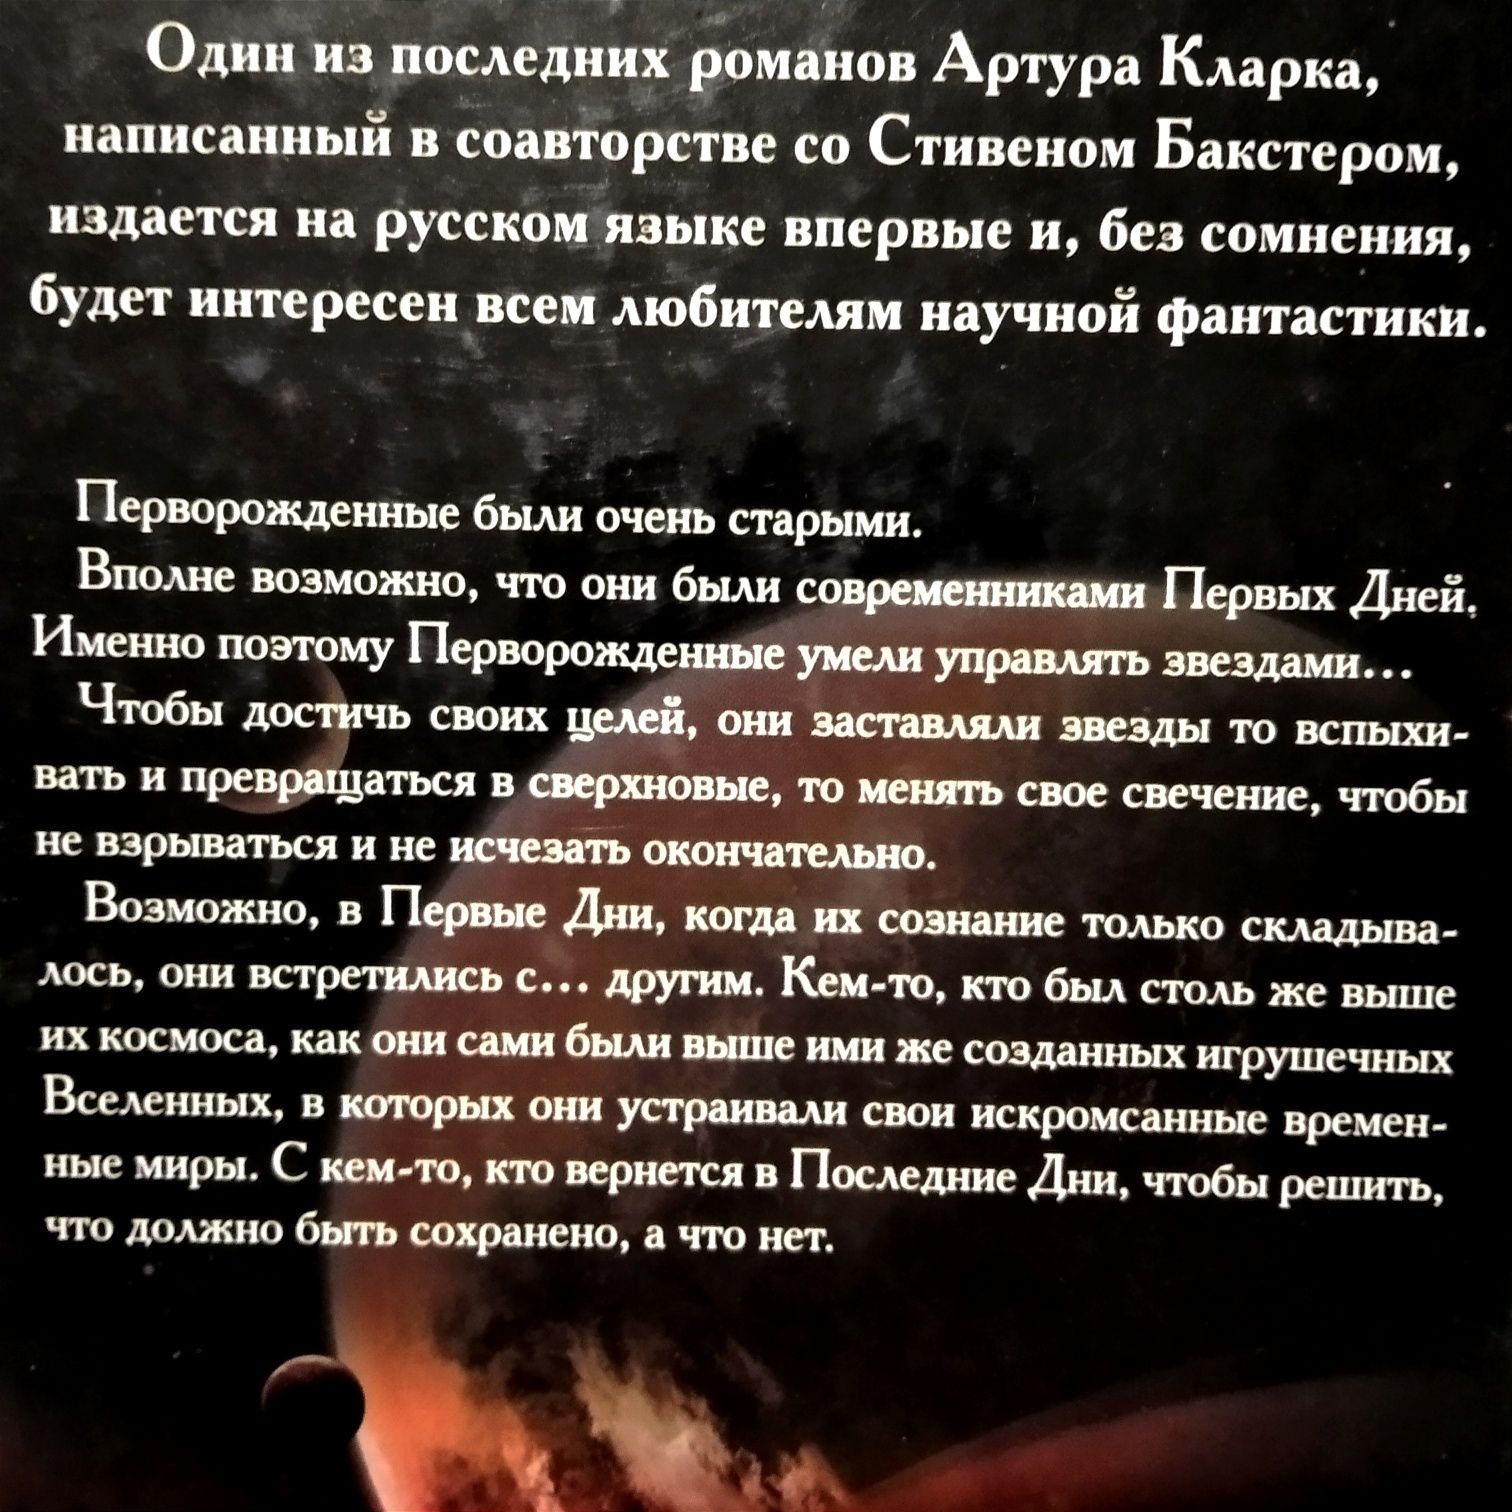 Роман Артура Кларка та Стівена Бакстера "Перворожденный".